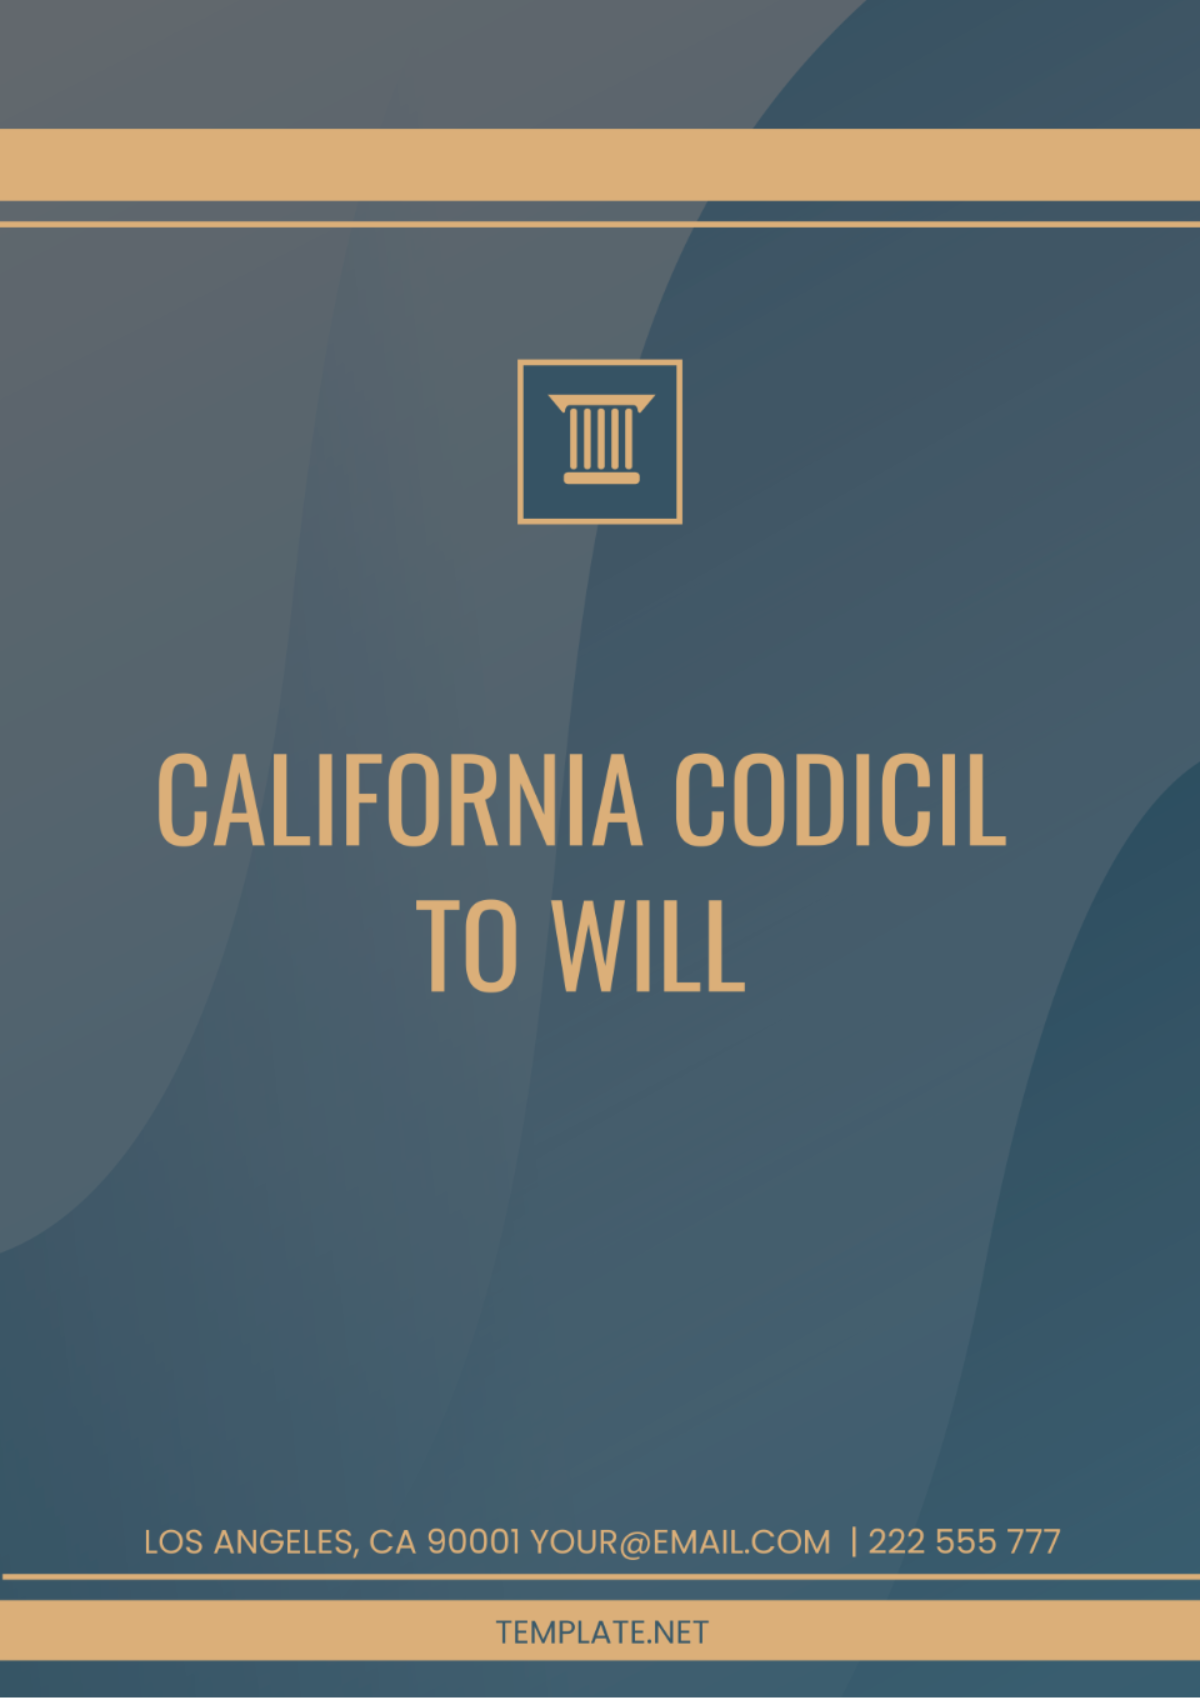 California Codicil to Will Template